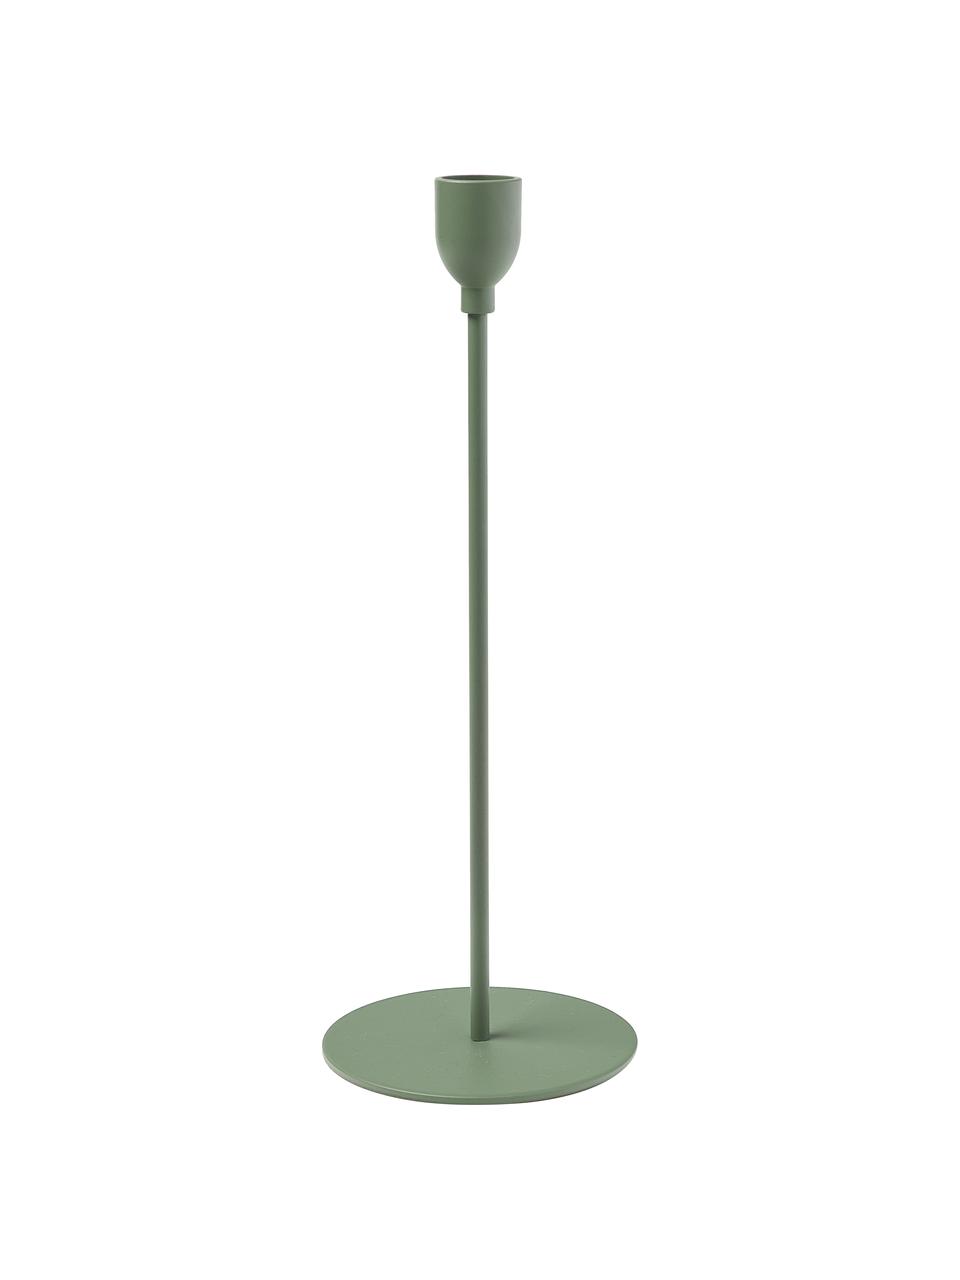 Kerzenhalter-Set Malte in Grün, 3-tlg., Metall, beschichtet, Grün, Set mit verschiedenen Größen